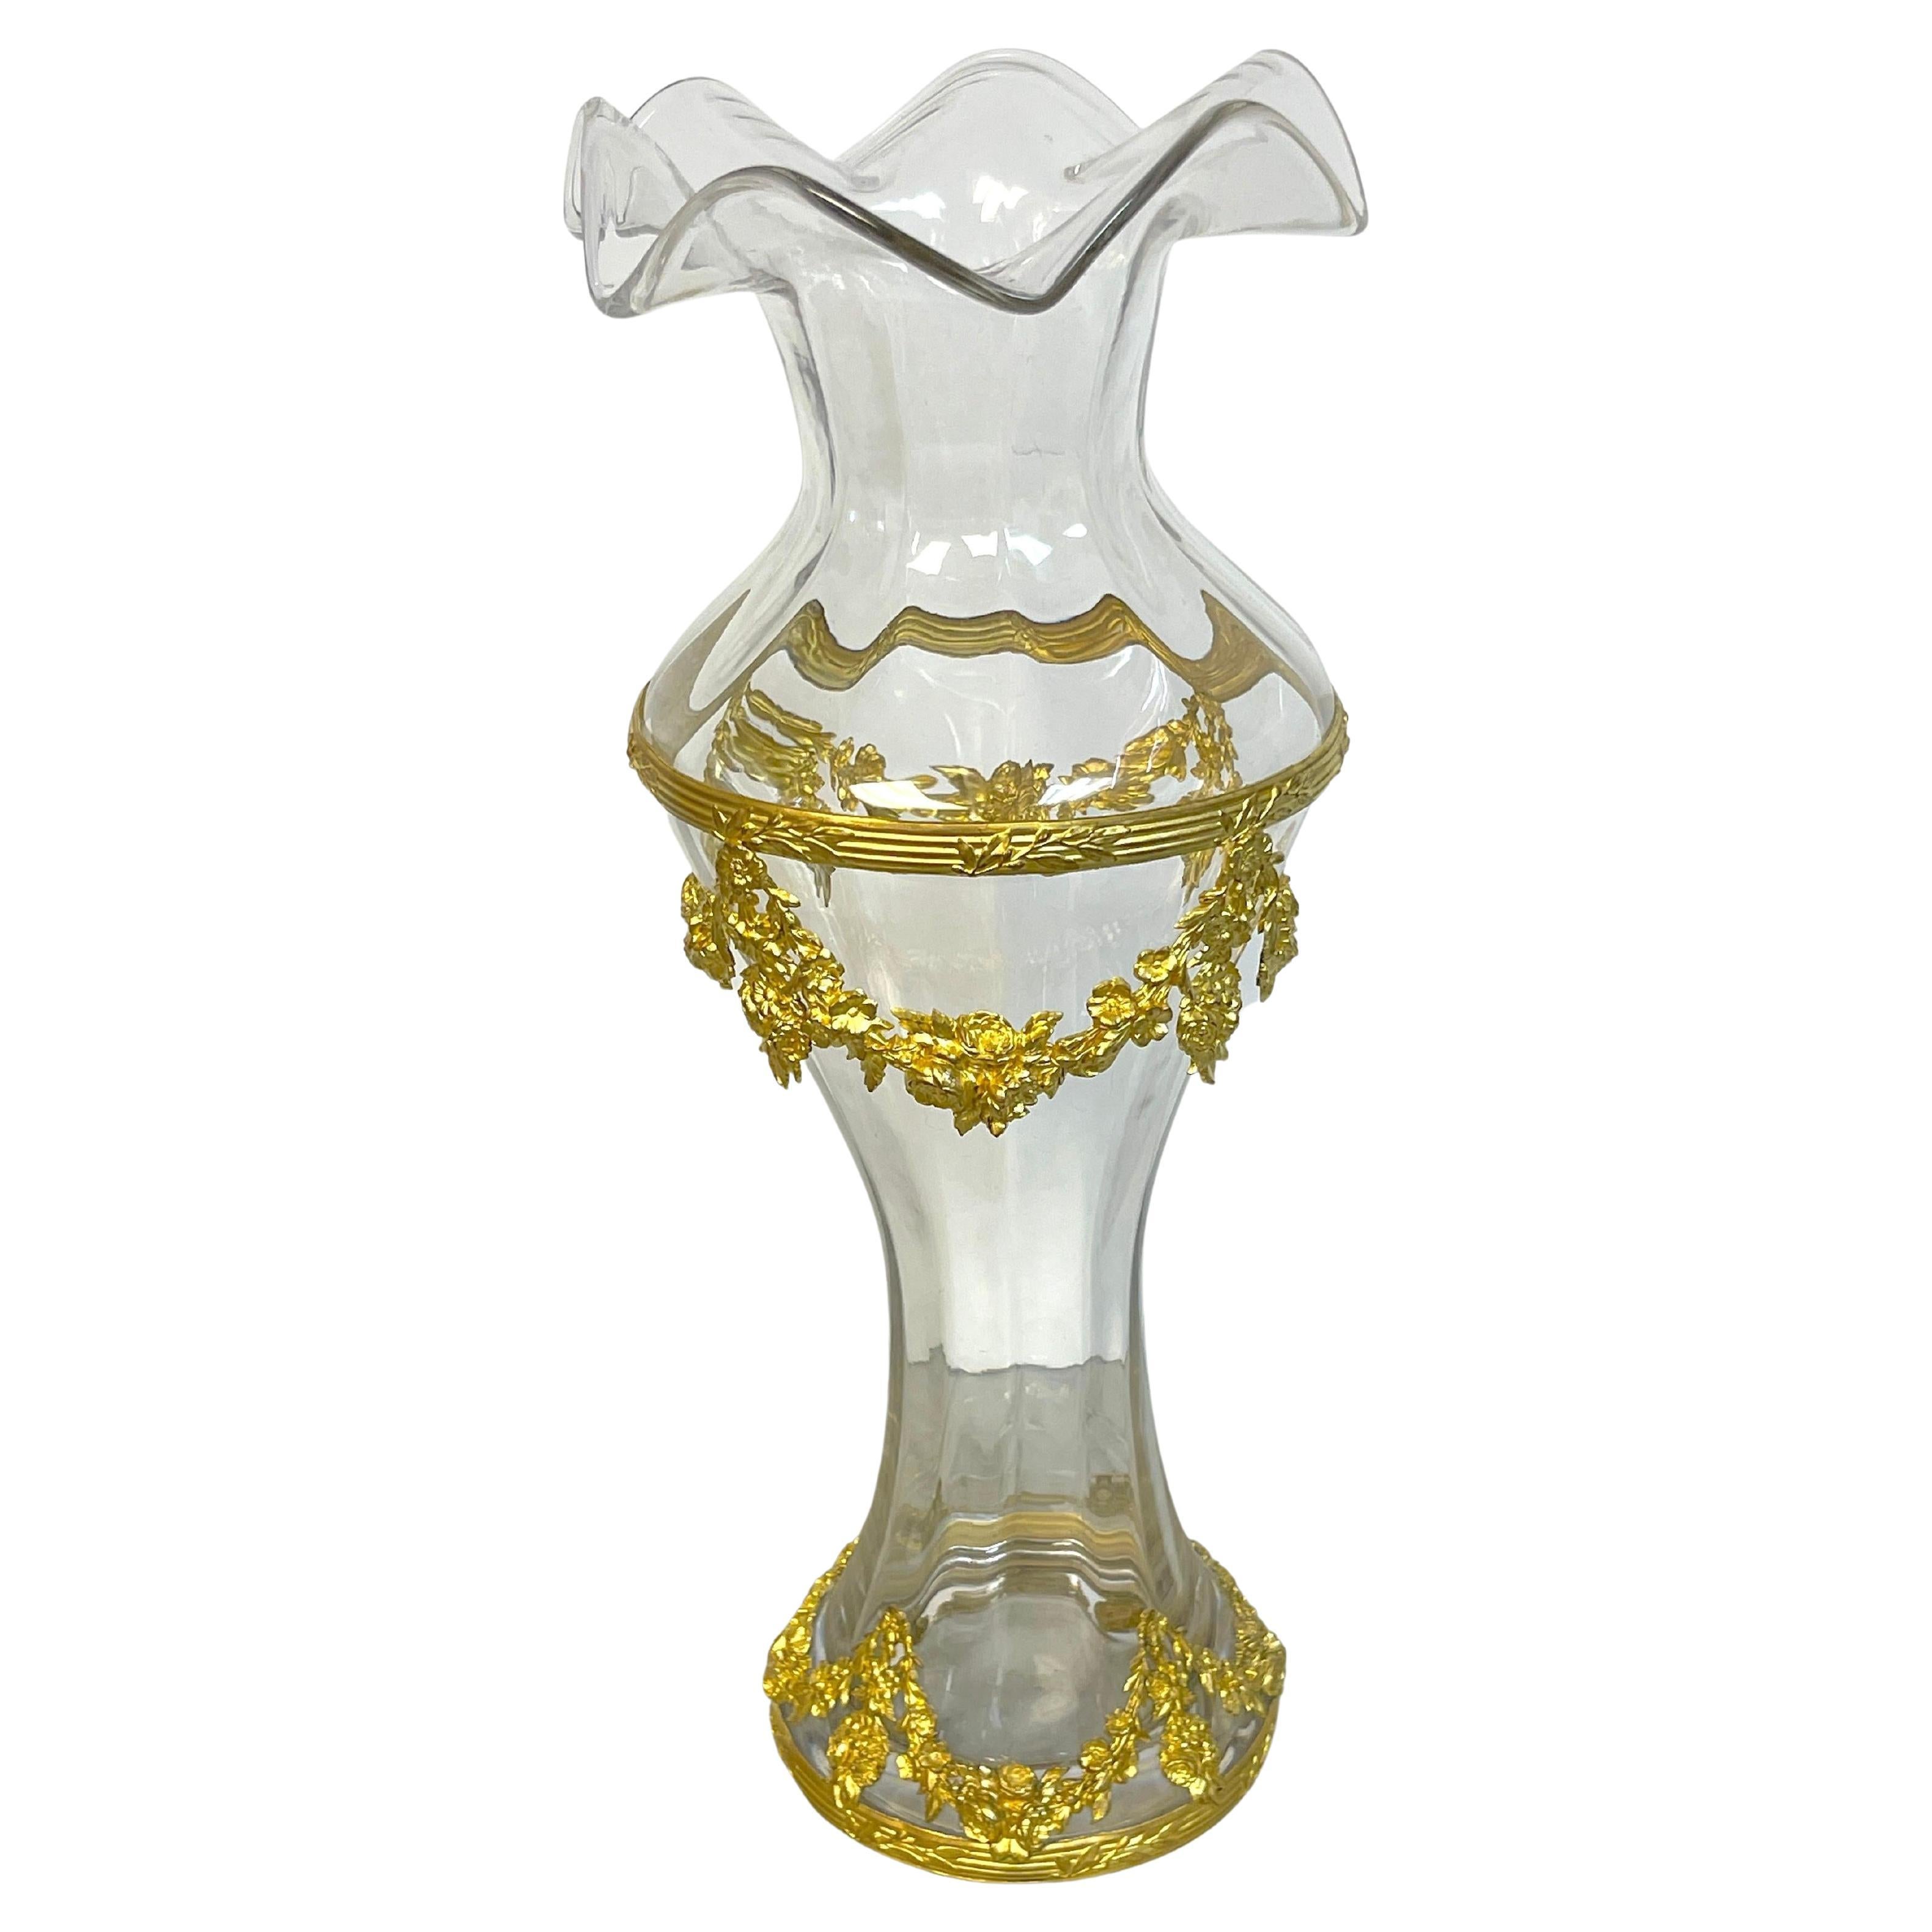 Grand vase signé Belle Époque en cristal de Sèvres monté sur bronze doré